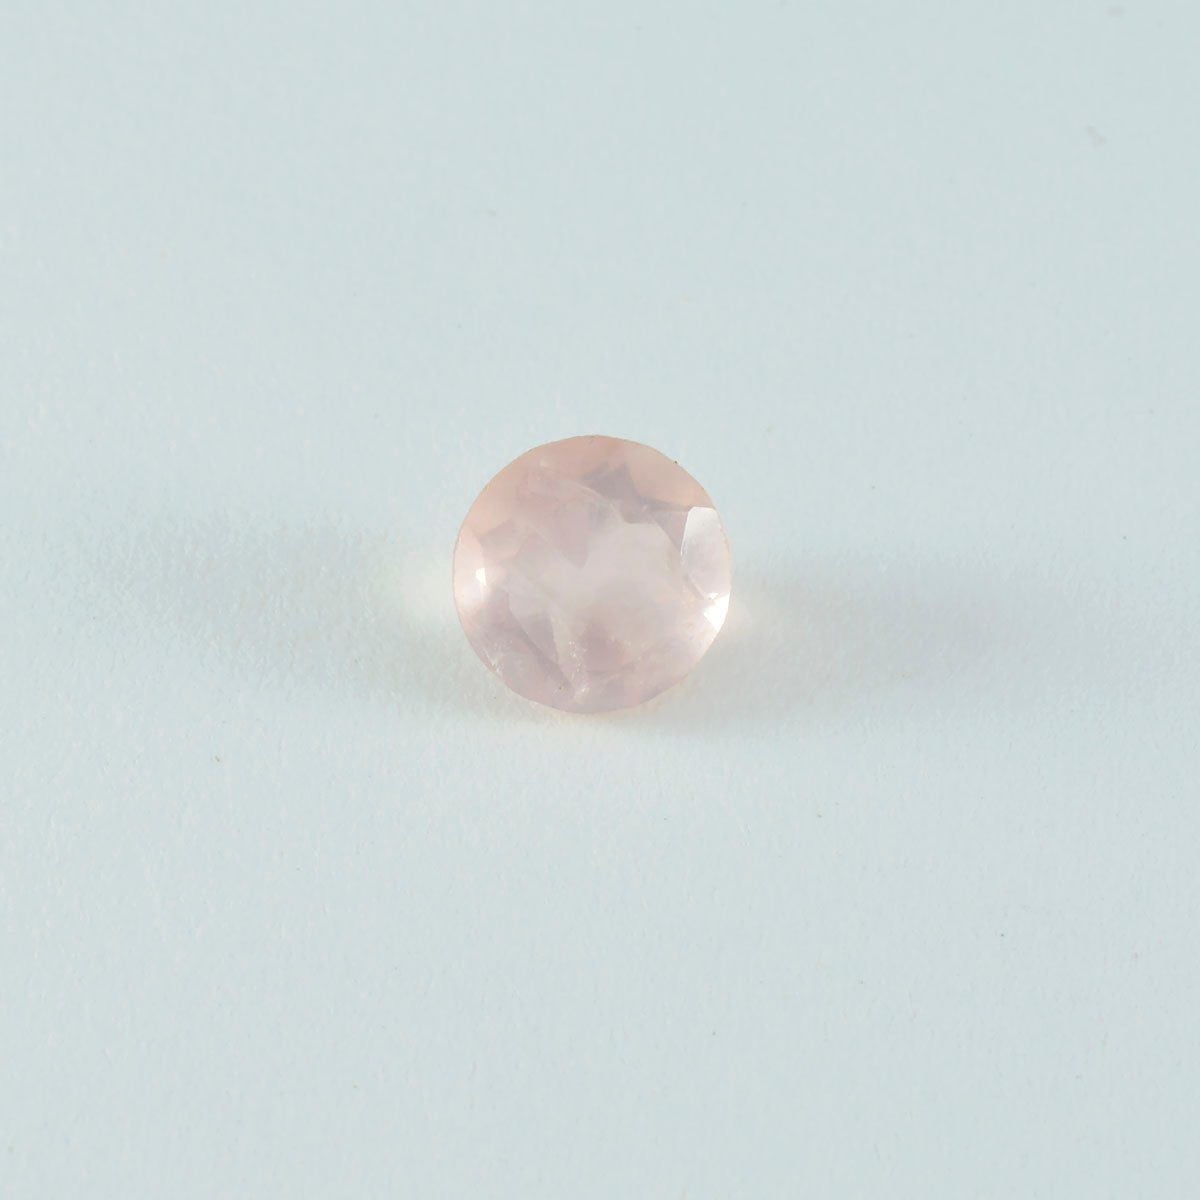 Riyogems 1 Stück rosafarbener Rosenquarz, facettiert, 11 x 11 mm, runde Form, hübsche Qualitätsedelsteine